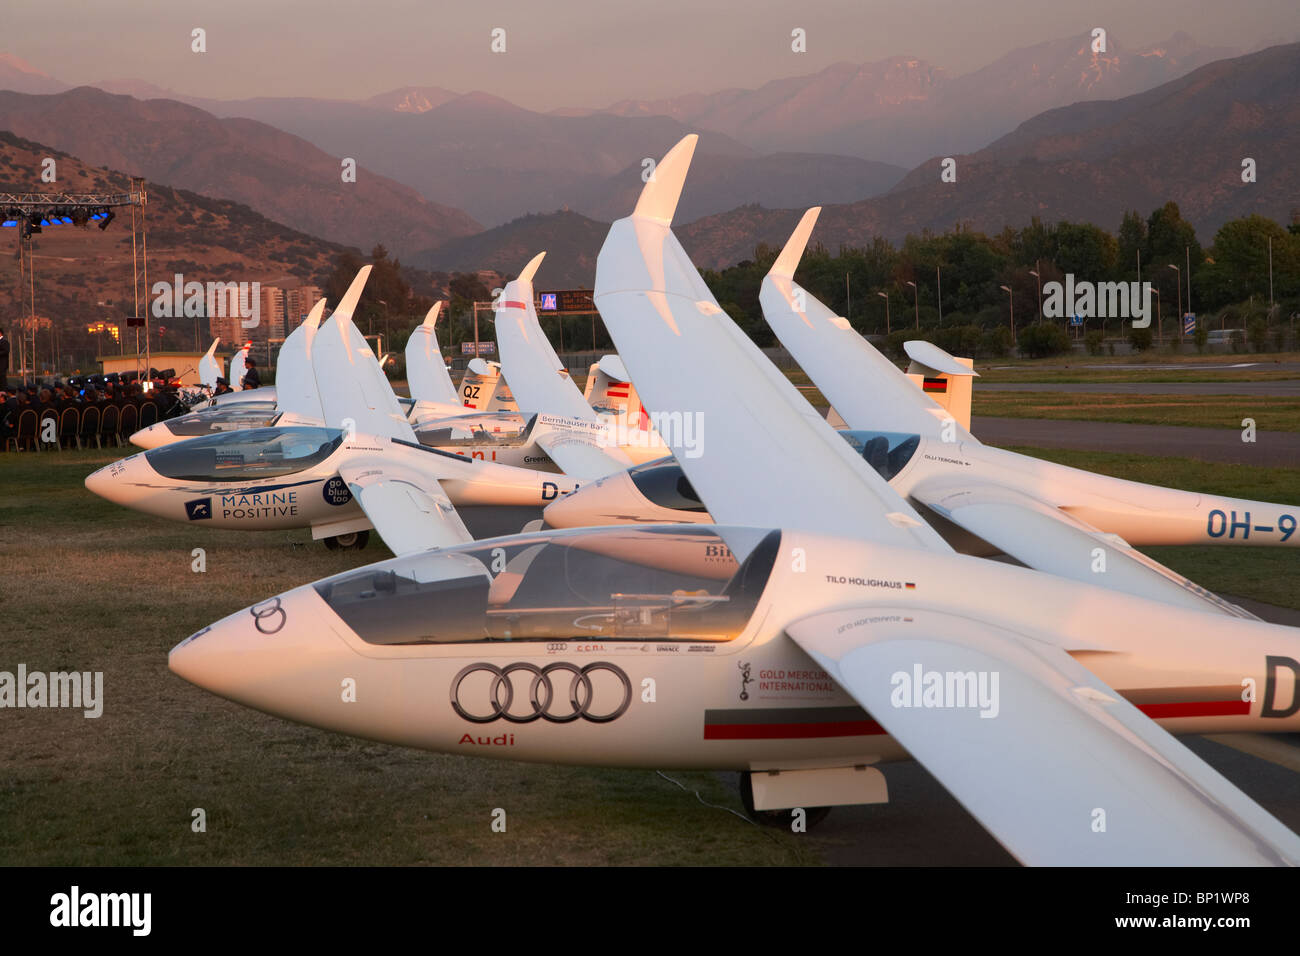 Dernière Lumière sur les planeurs au FAI World Grand Prix de planeur, l'Aérodrome de Vitacura, Santiago, Chili, Amérique du Sud Banque D'Images